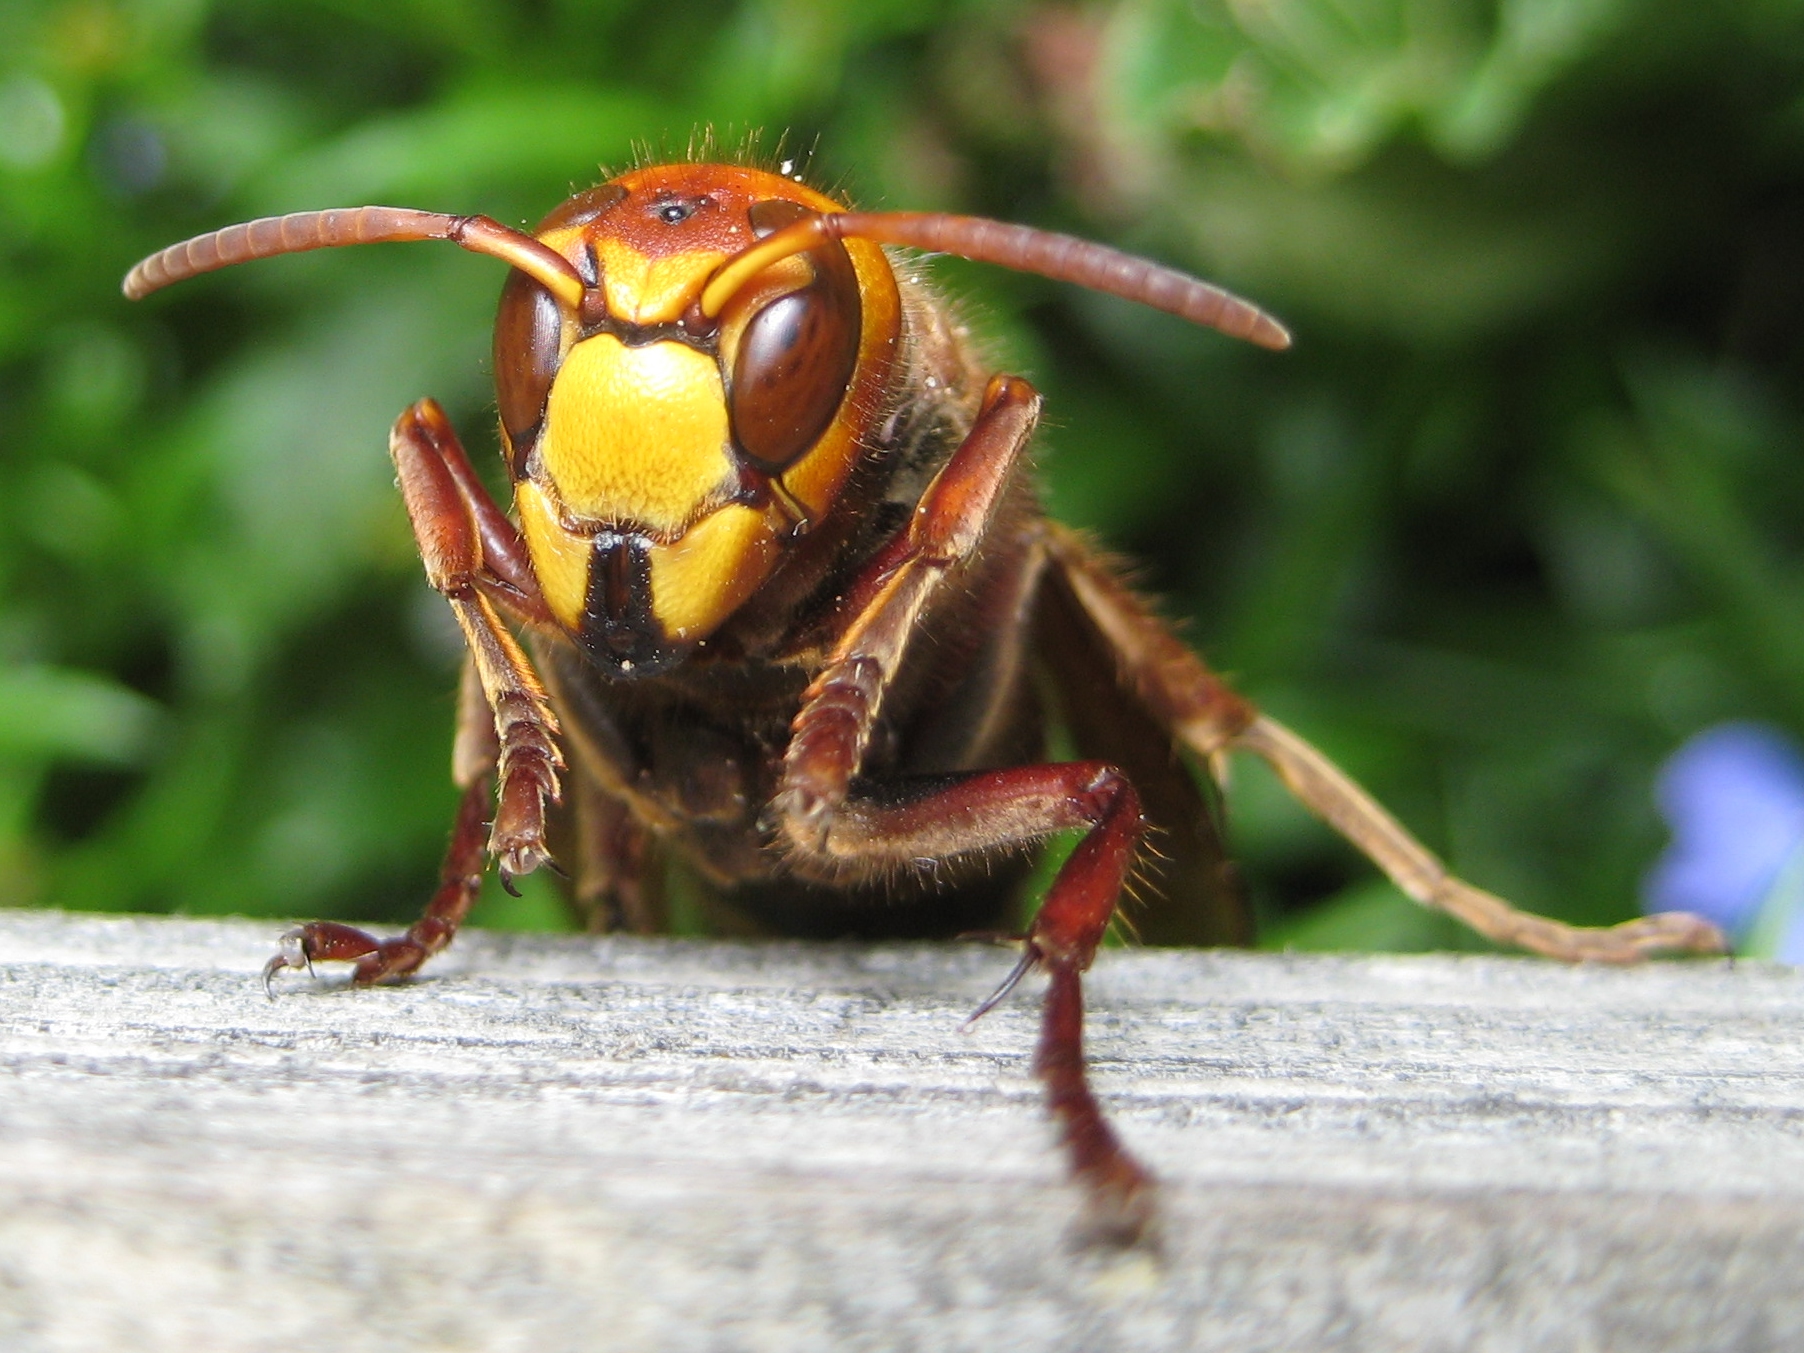 File:European hornet 090621.jpg - Wikimedia Commons